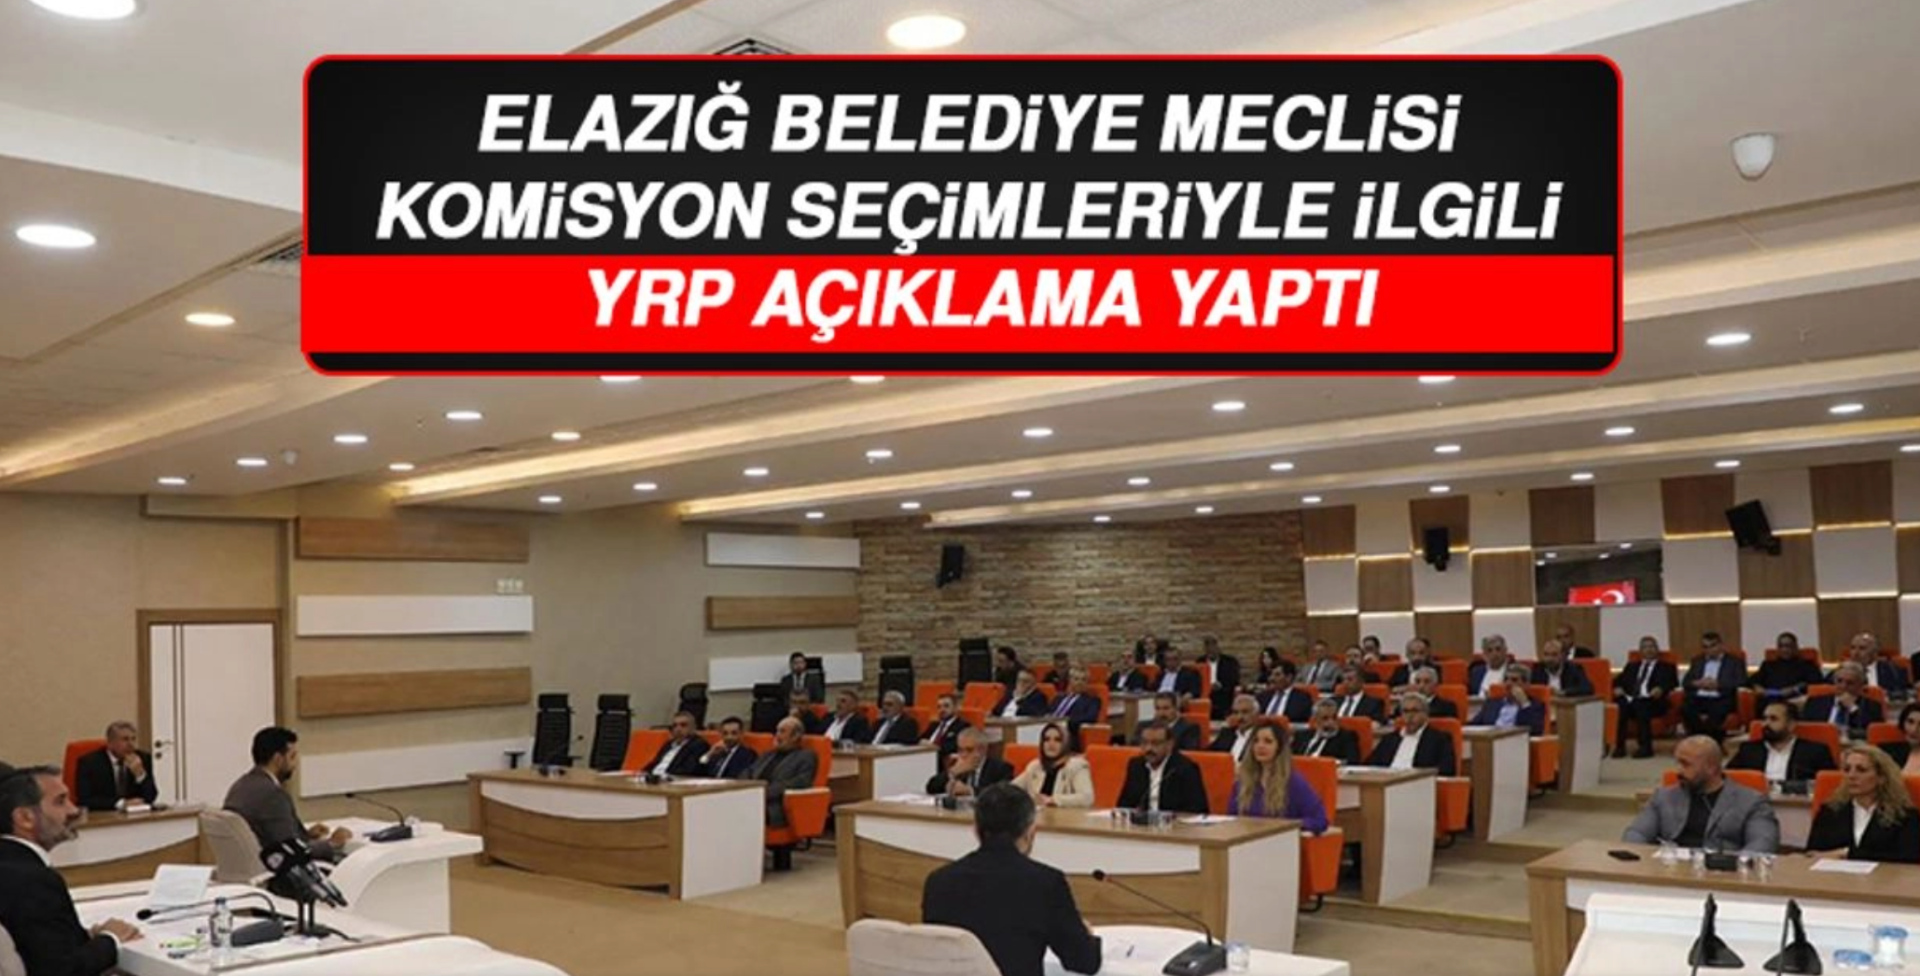 Elazığ Belediye Meclisi Komisyon Seçimleriyle İlgili YRP Açıklama Yaptı